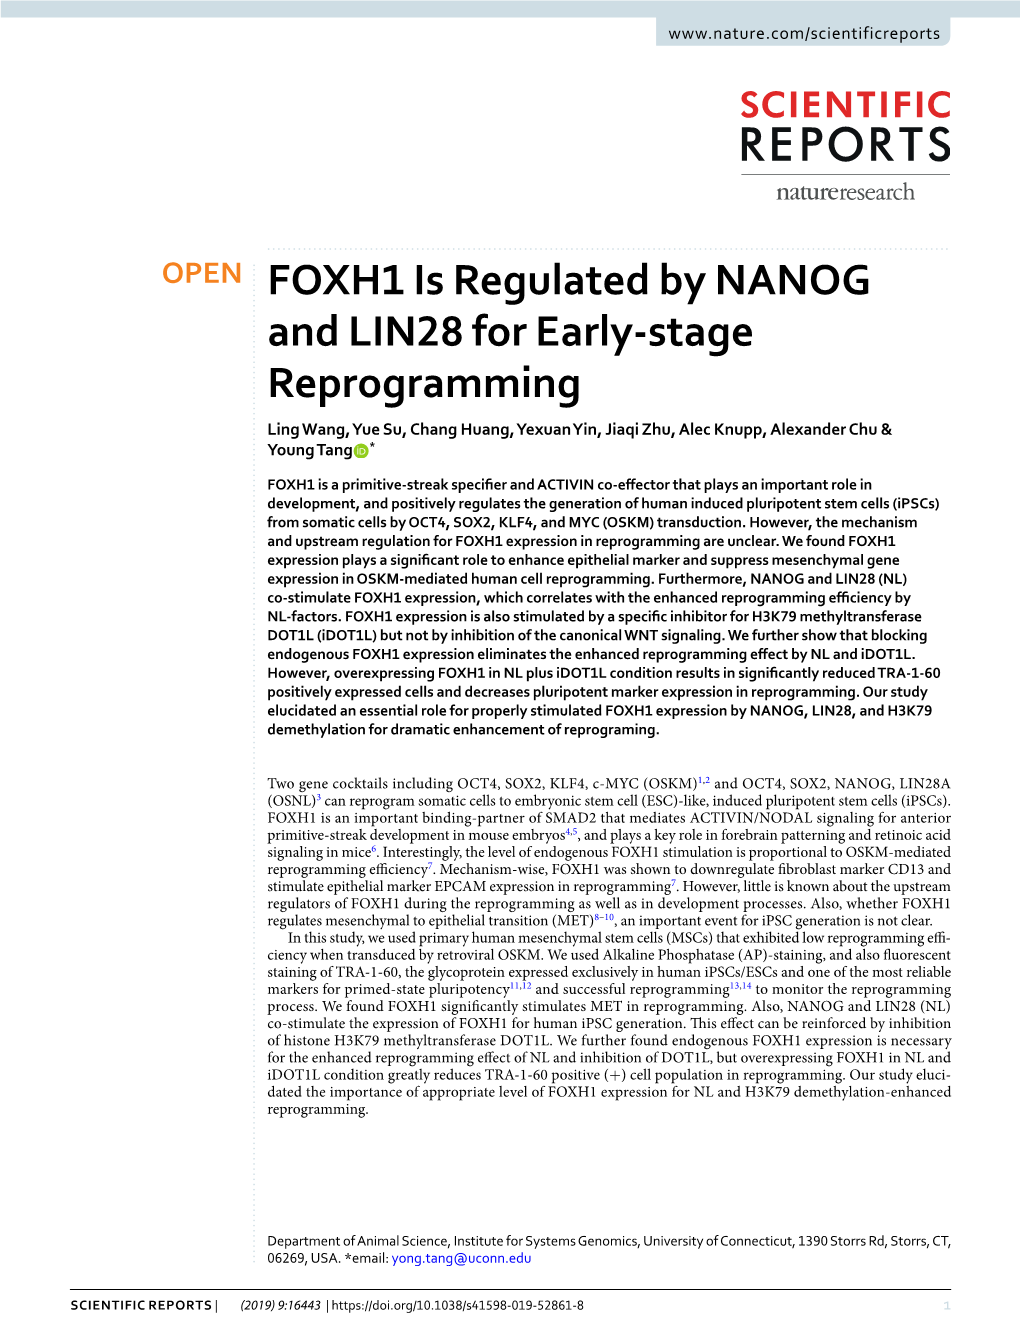 FOXH1 Is Regulated by NANOG and LIN28 for Early-Stage Reprogramming Ling Wang, Yue Su, Chang Huang, Yexuan Yin, Jiaqi Zhu, Alec Knupp, Alexander Chu & Young Tang *